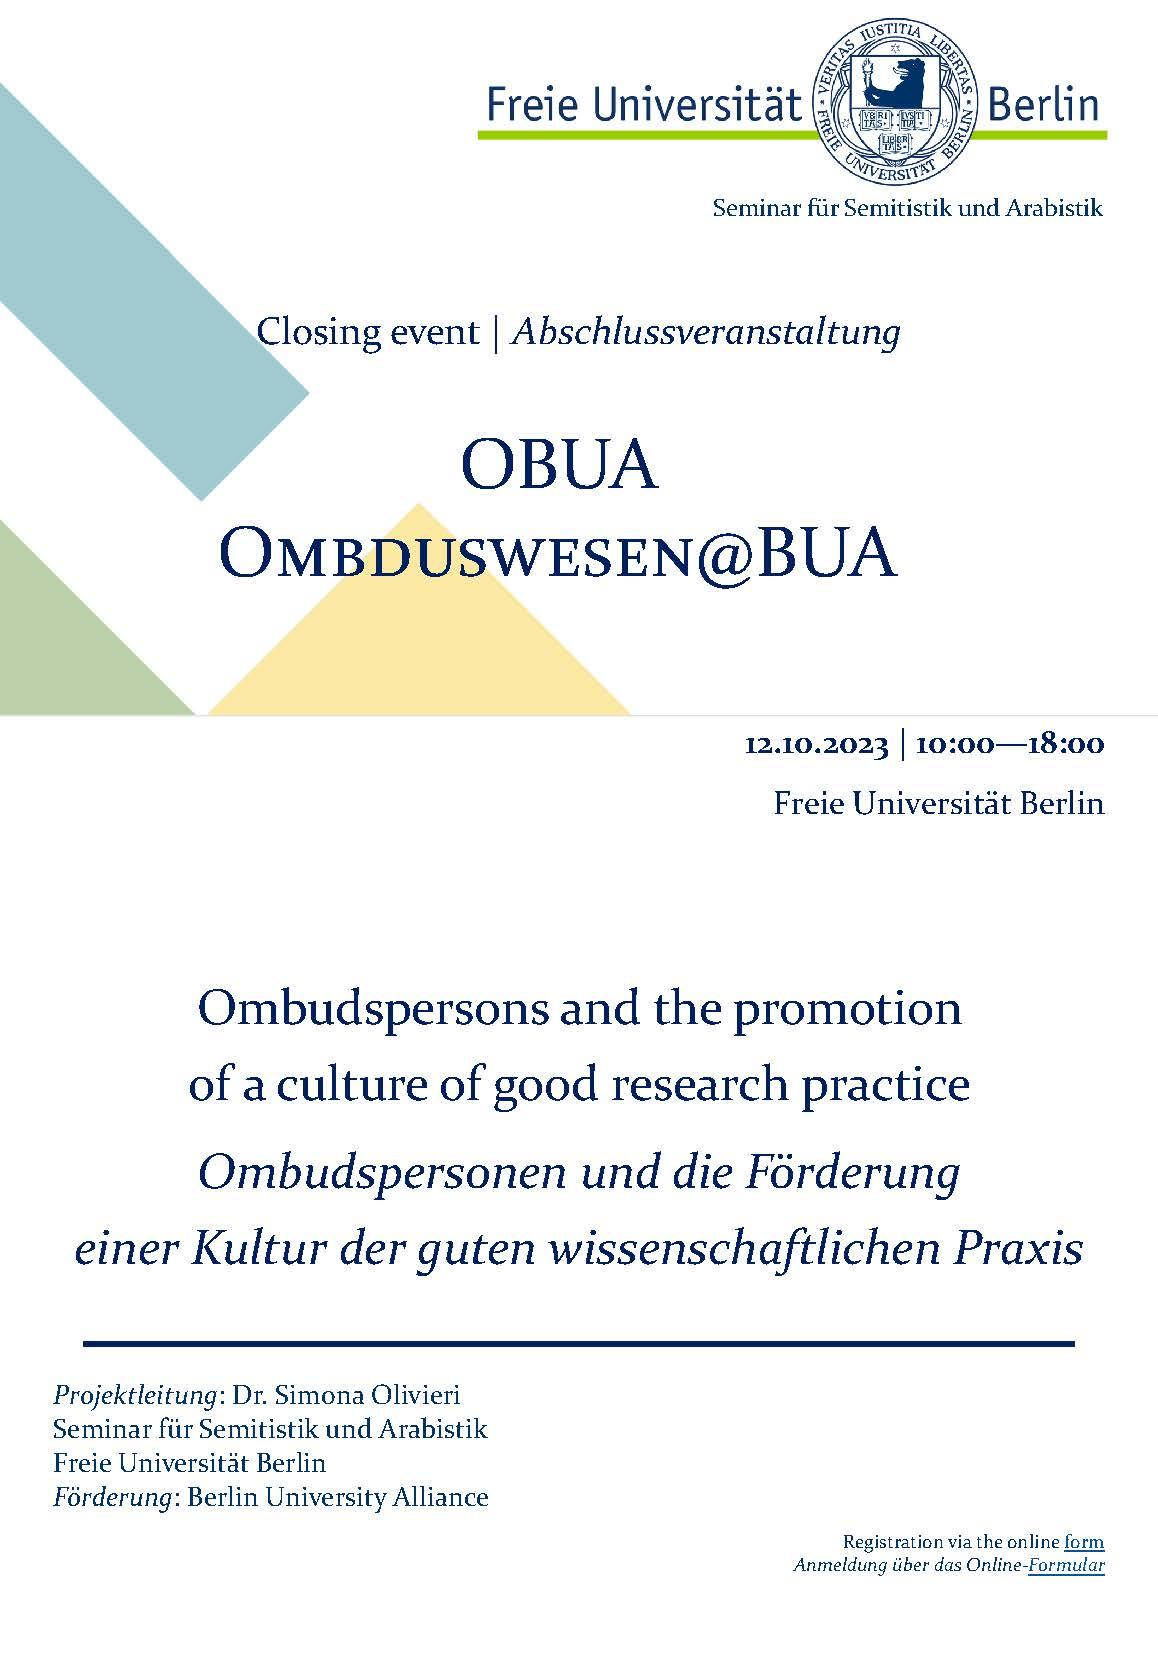 OBUA closing event_Poster